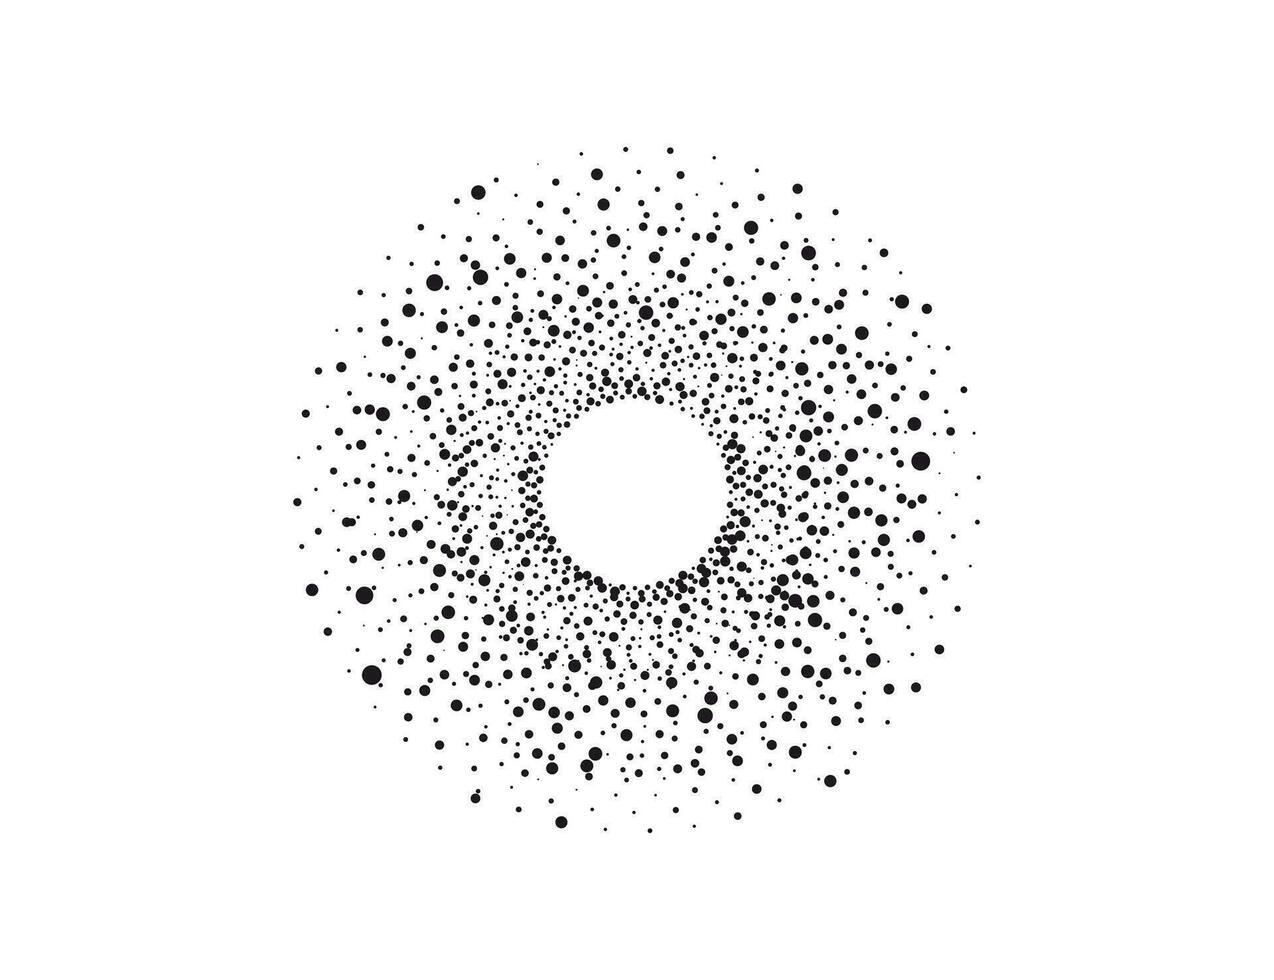 halftone dots in cirkel het formulier, logo. vector illustratie.